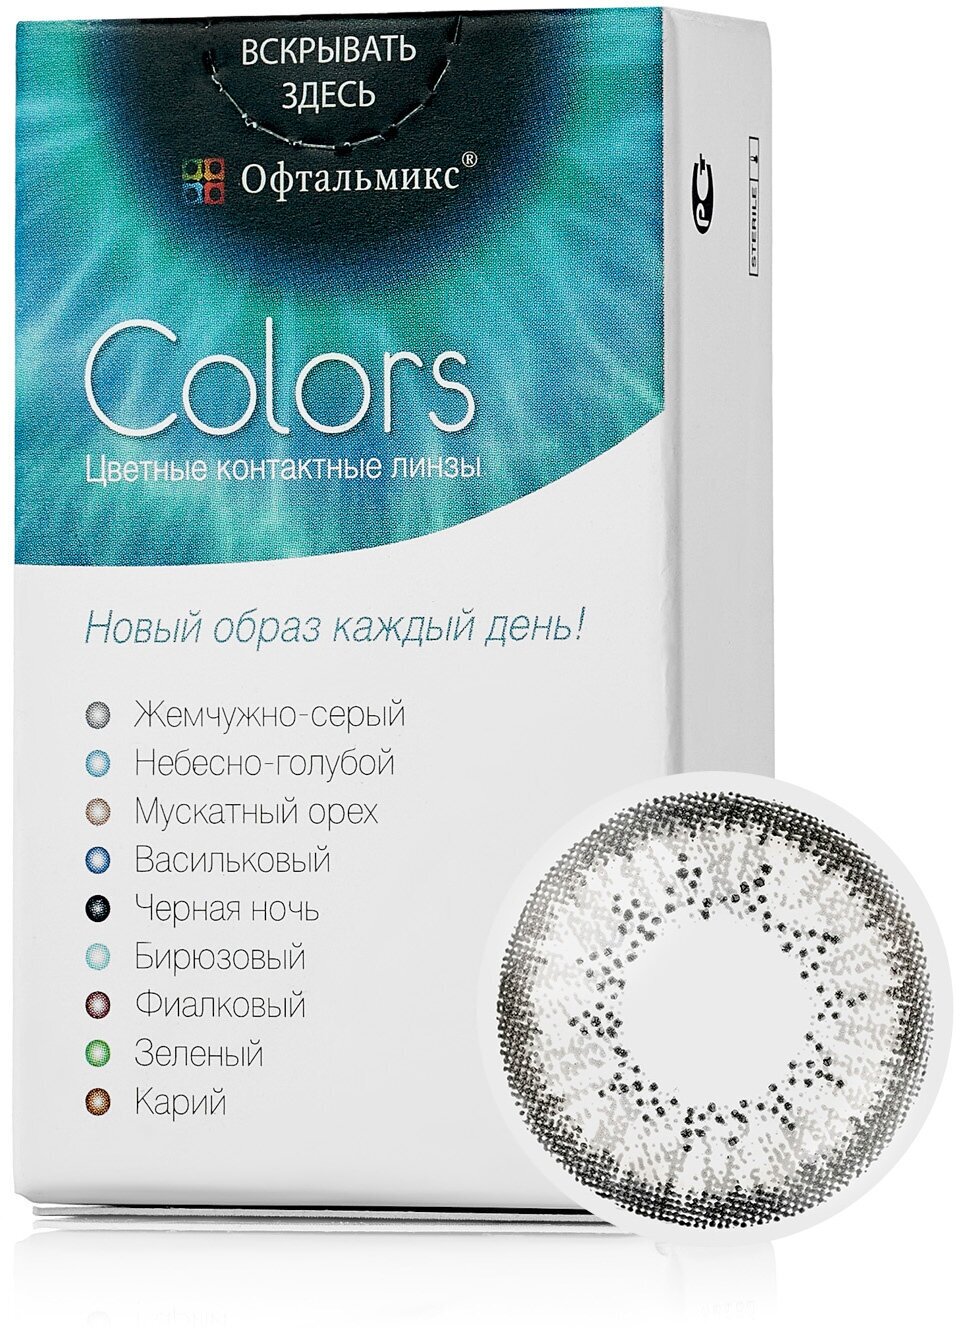 Цветные контактные линзы Офтальмикс Color Gray (жемчужно-серый) R8.6 -3.5D (2шт.)